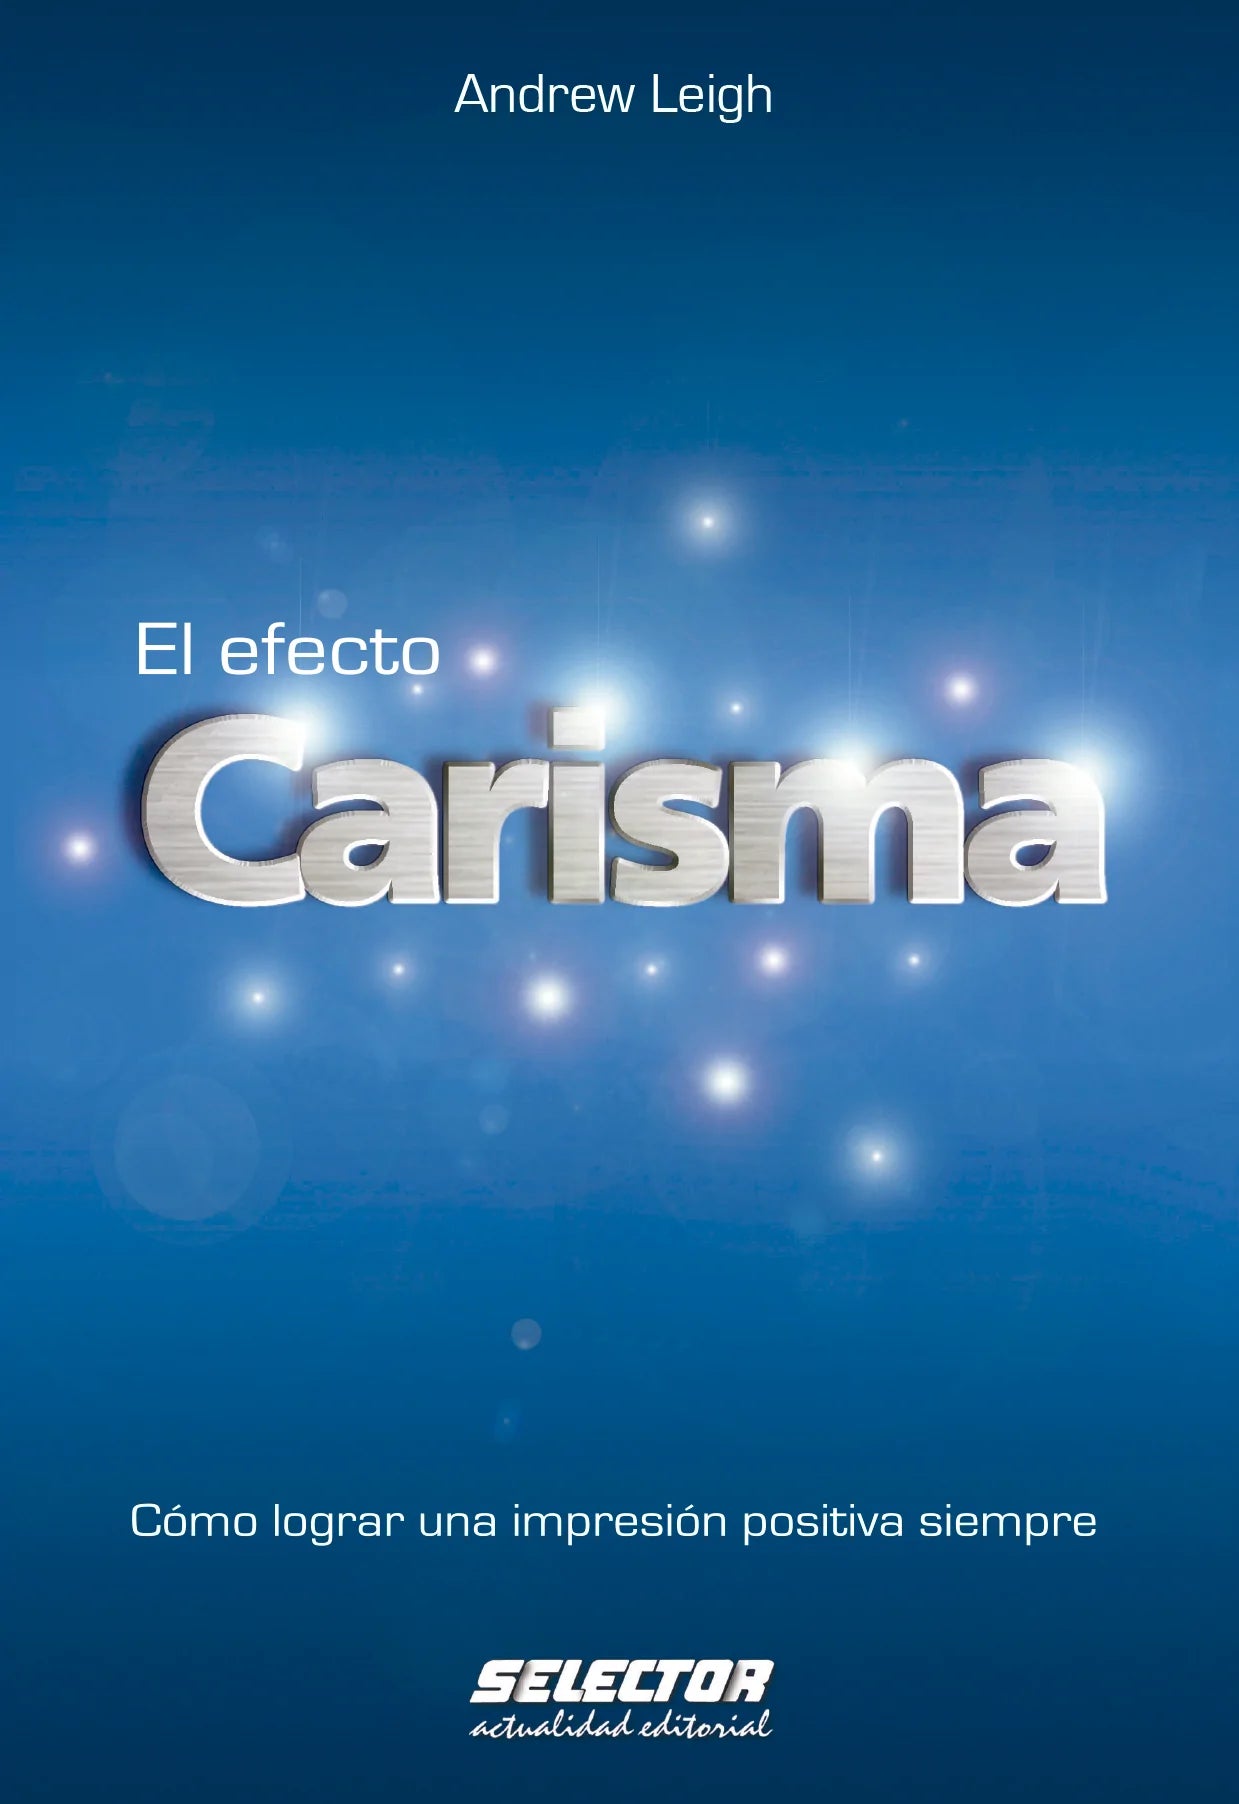 El efecto carisma - Editorial Selector